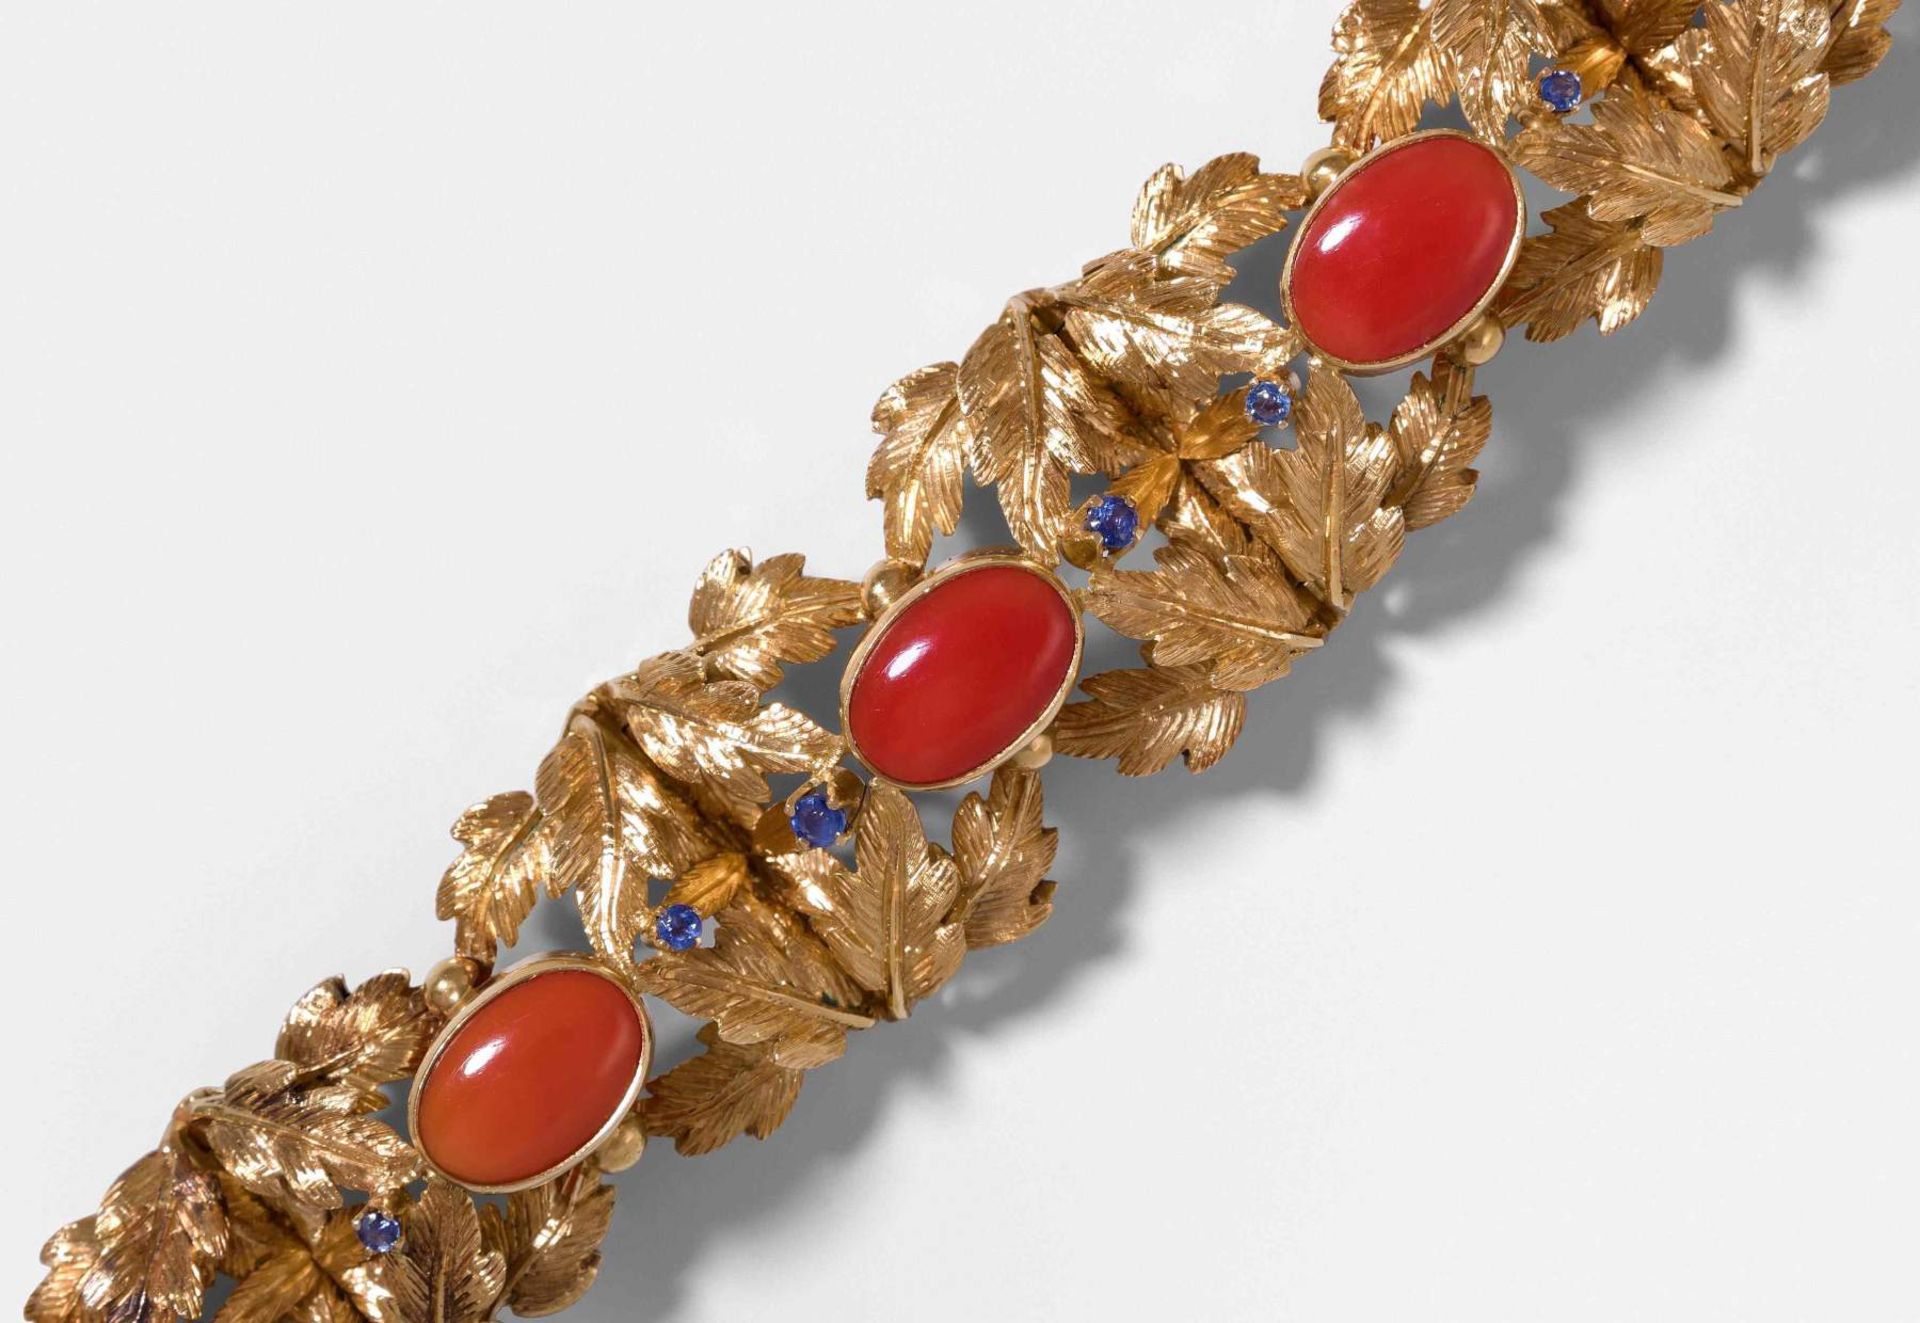 Korallen-Saphir-Bracelet
1950er Jahre. Naturalistisch gestaltetes Bracelet aus gravierten Blättern